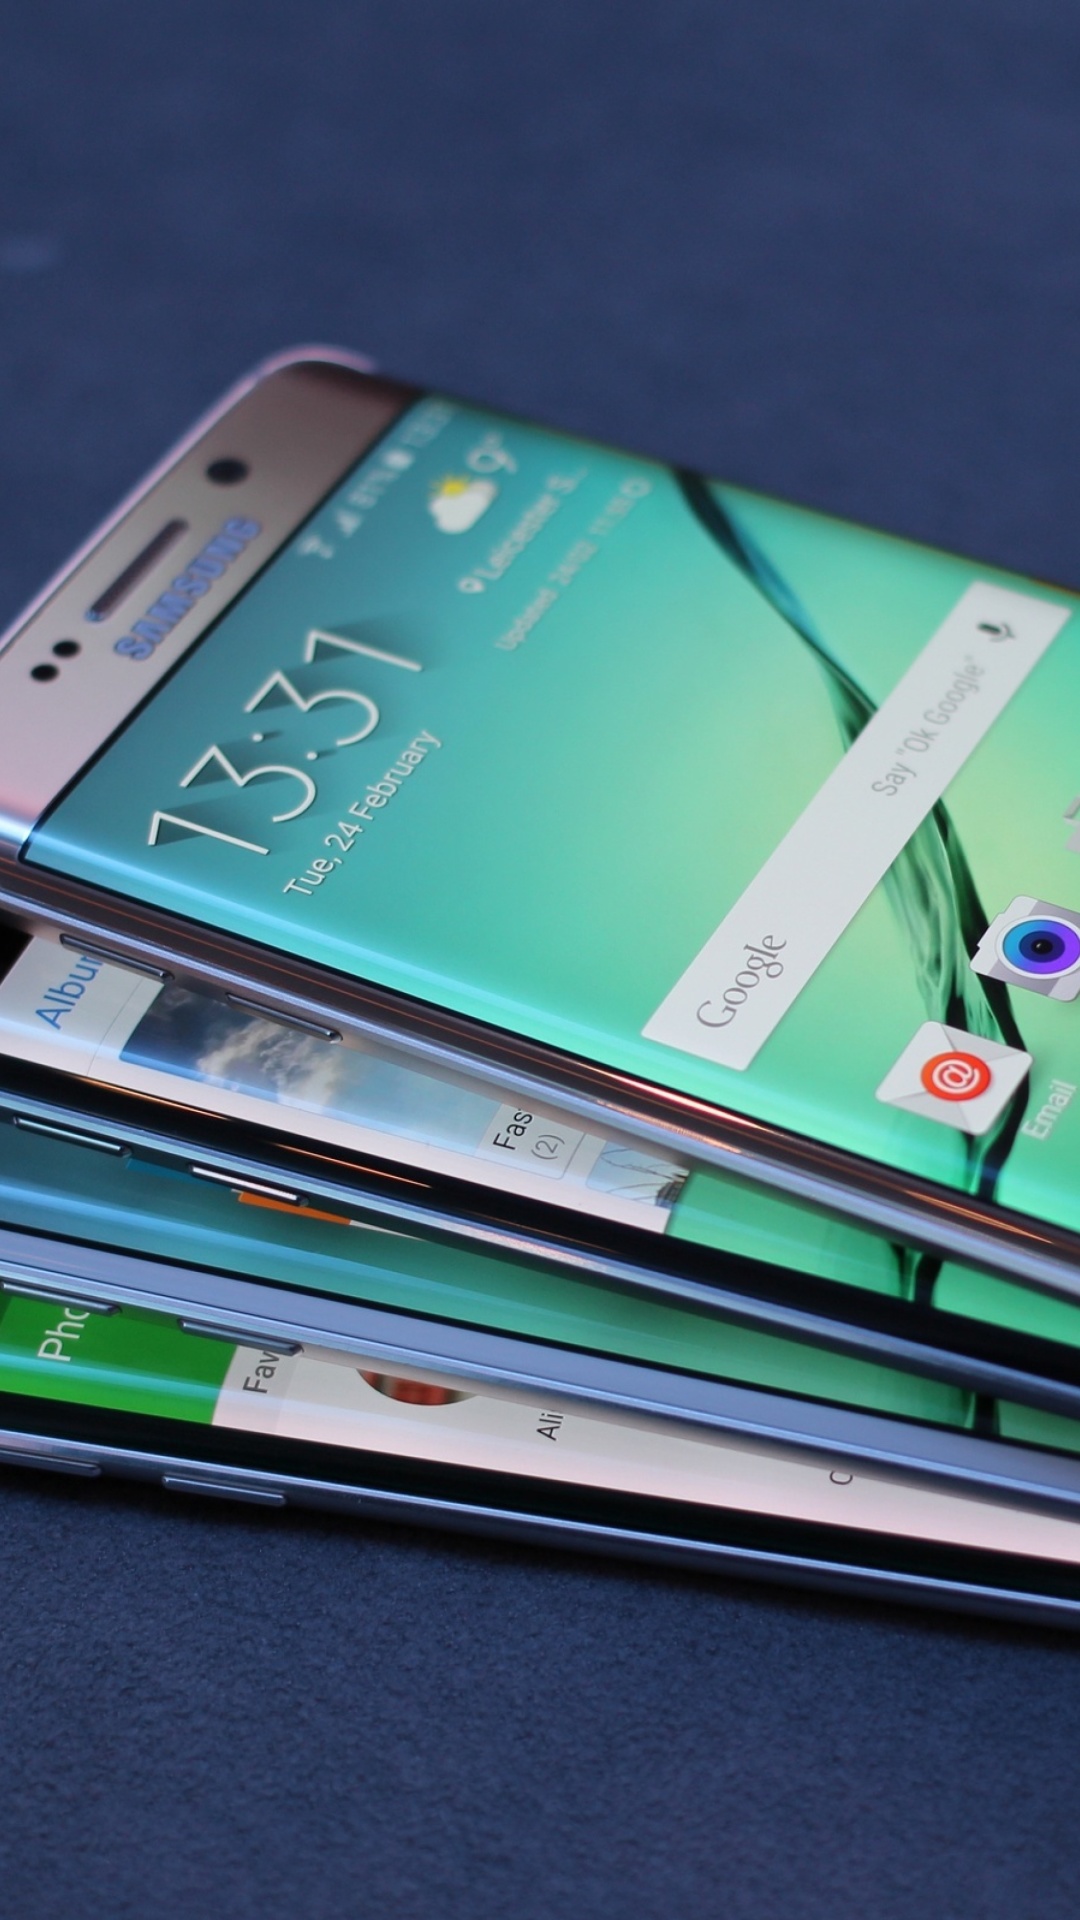 Обои Galaxy S7 and Galaxy S7 edge from Verizon 1080x1920